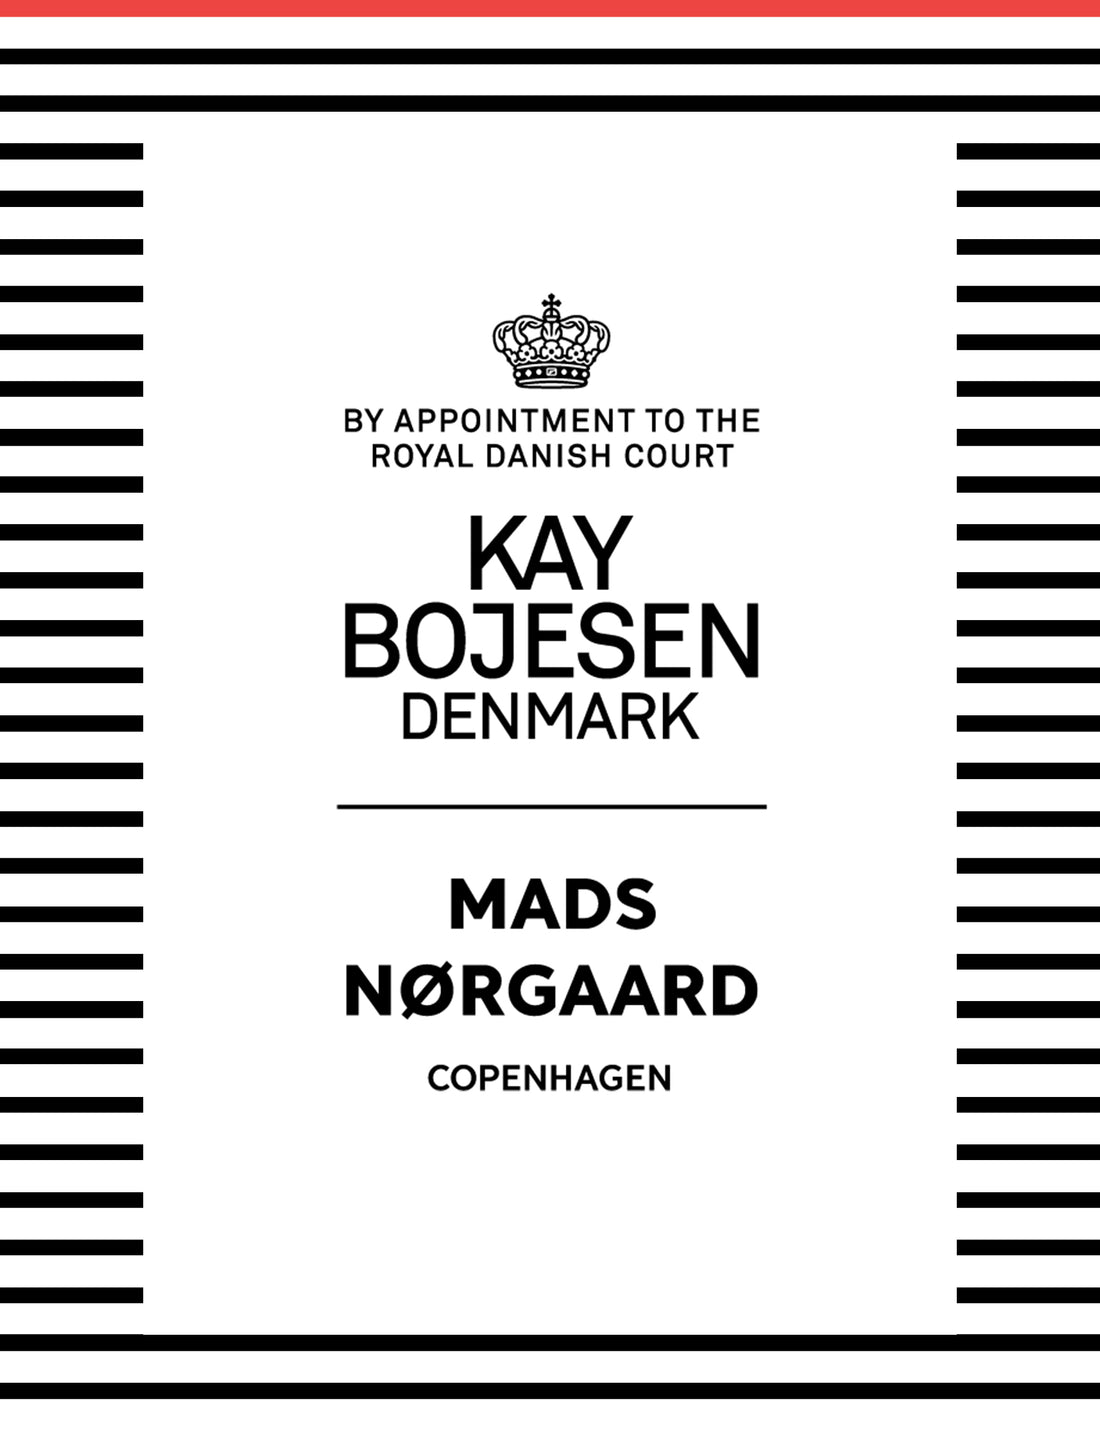 Neue Kooperation mit Kay Bojesen Denmark wird morgen bei 3daysofdesign präsentiert